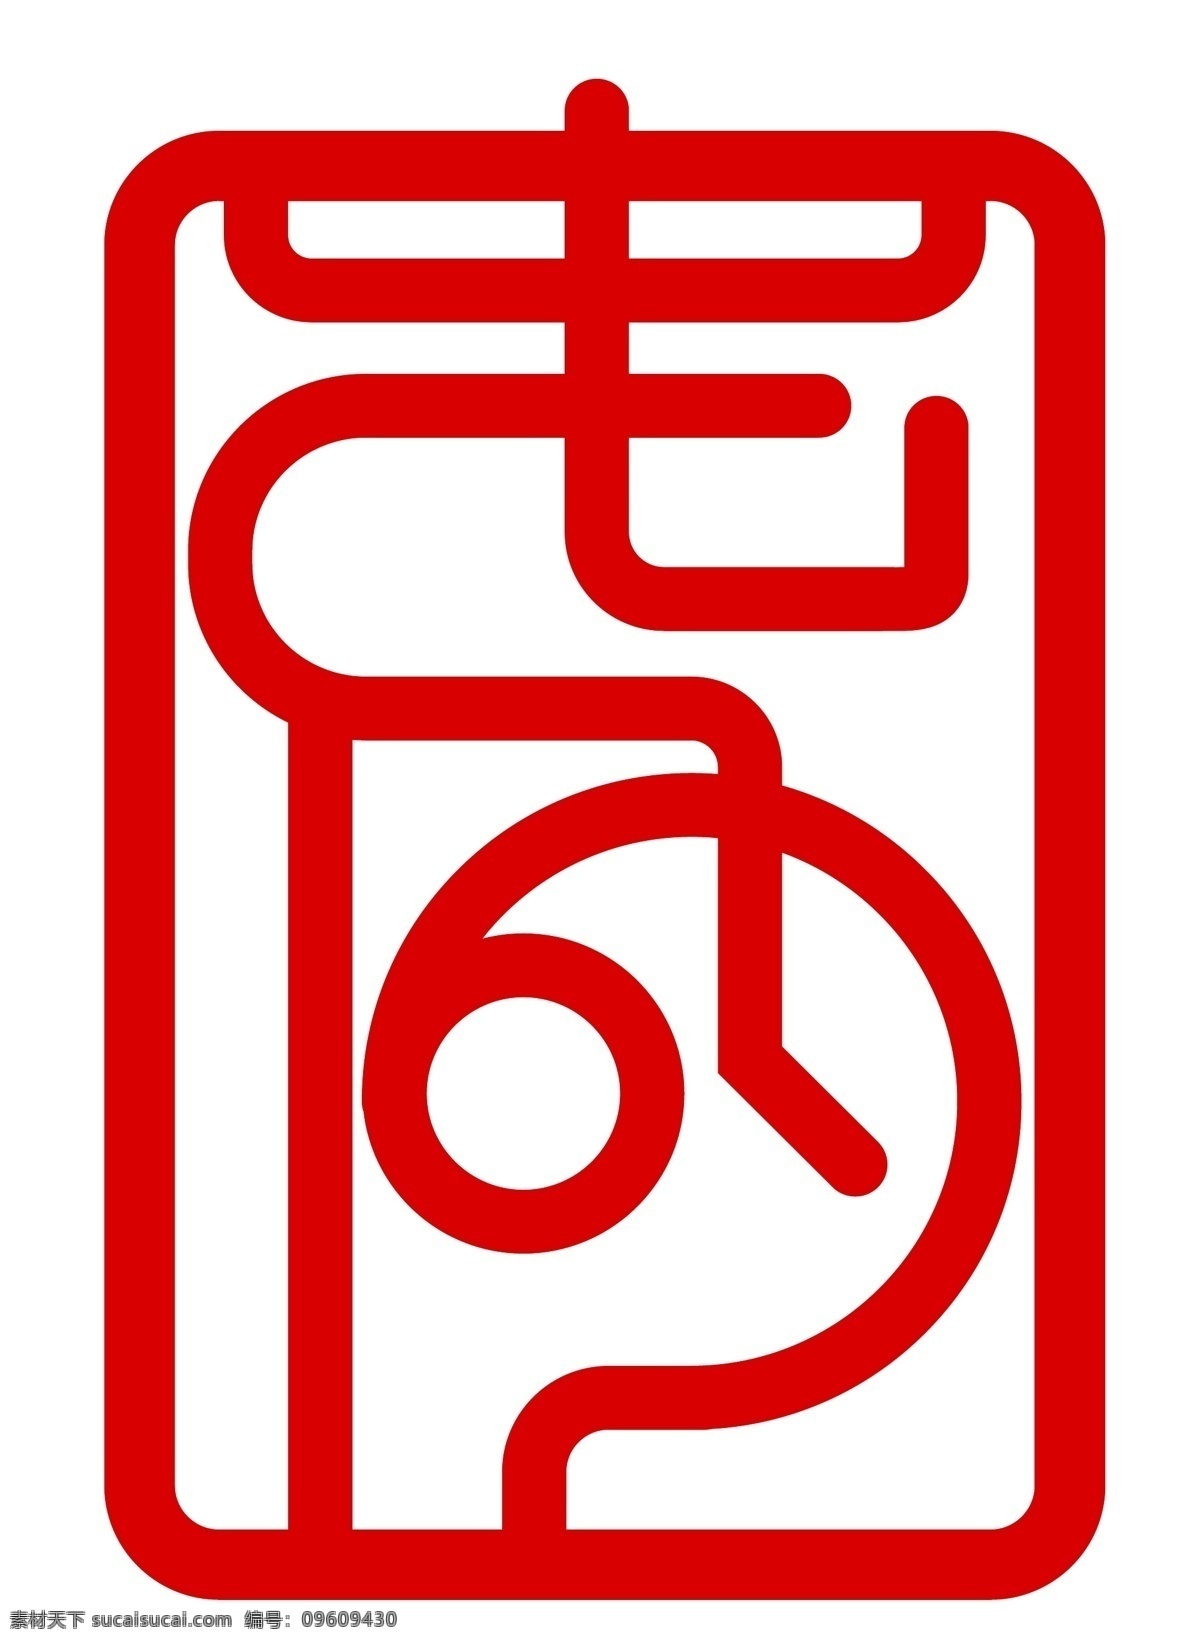 中式 印章 标志设计 烙印 文字 字体组合 企业标志 标识设计 logo 品牌 矢量素材 公共标志创意 标志图标 企业 标志